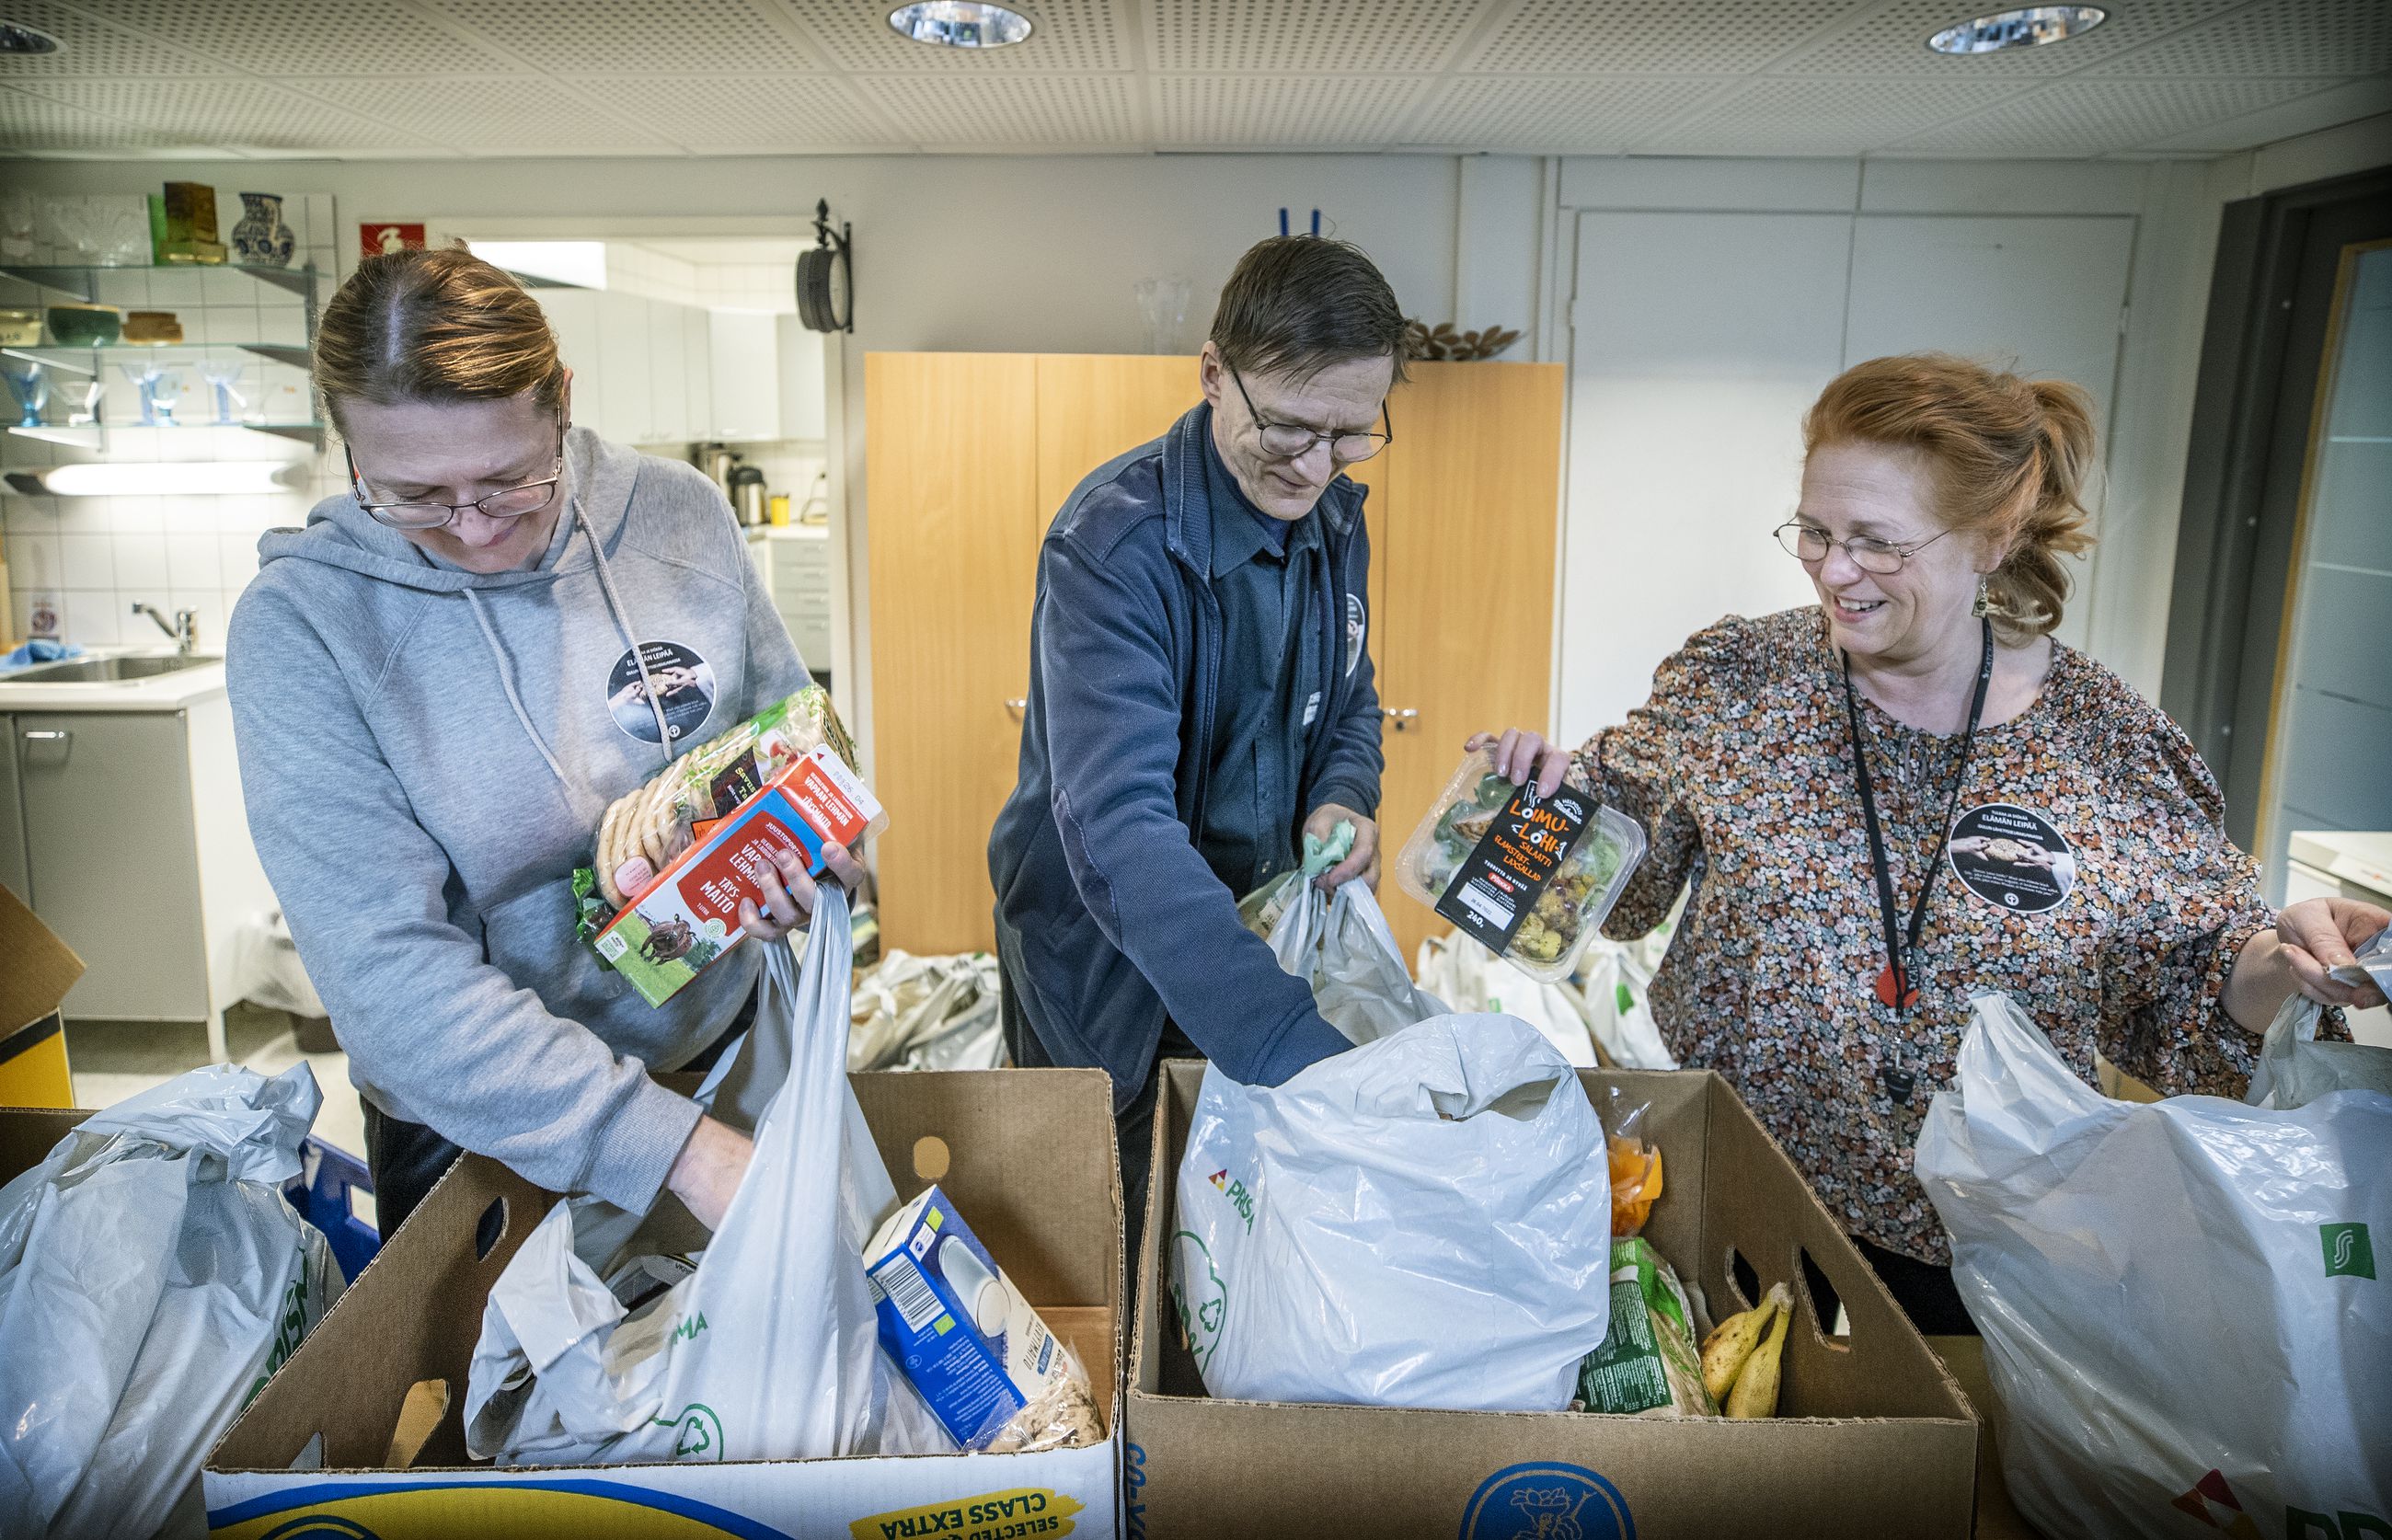 Jopa 1550 ihmistä Oulun seudulla saa ruoka-apua Prikka kiertoon -hankkeen  kautta – 